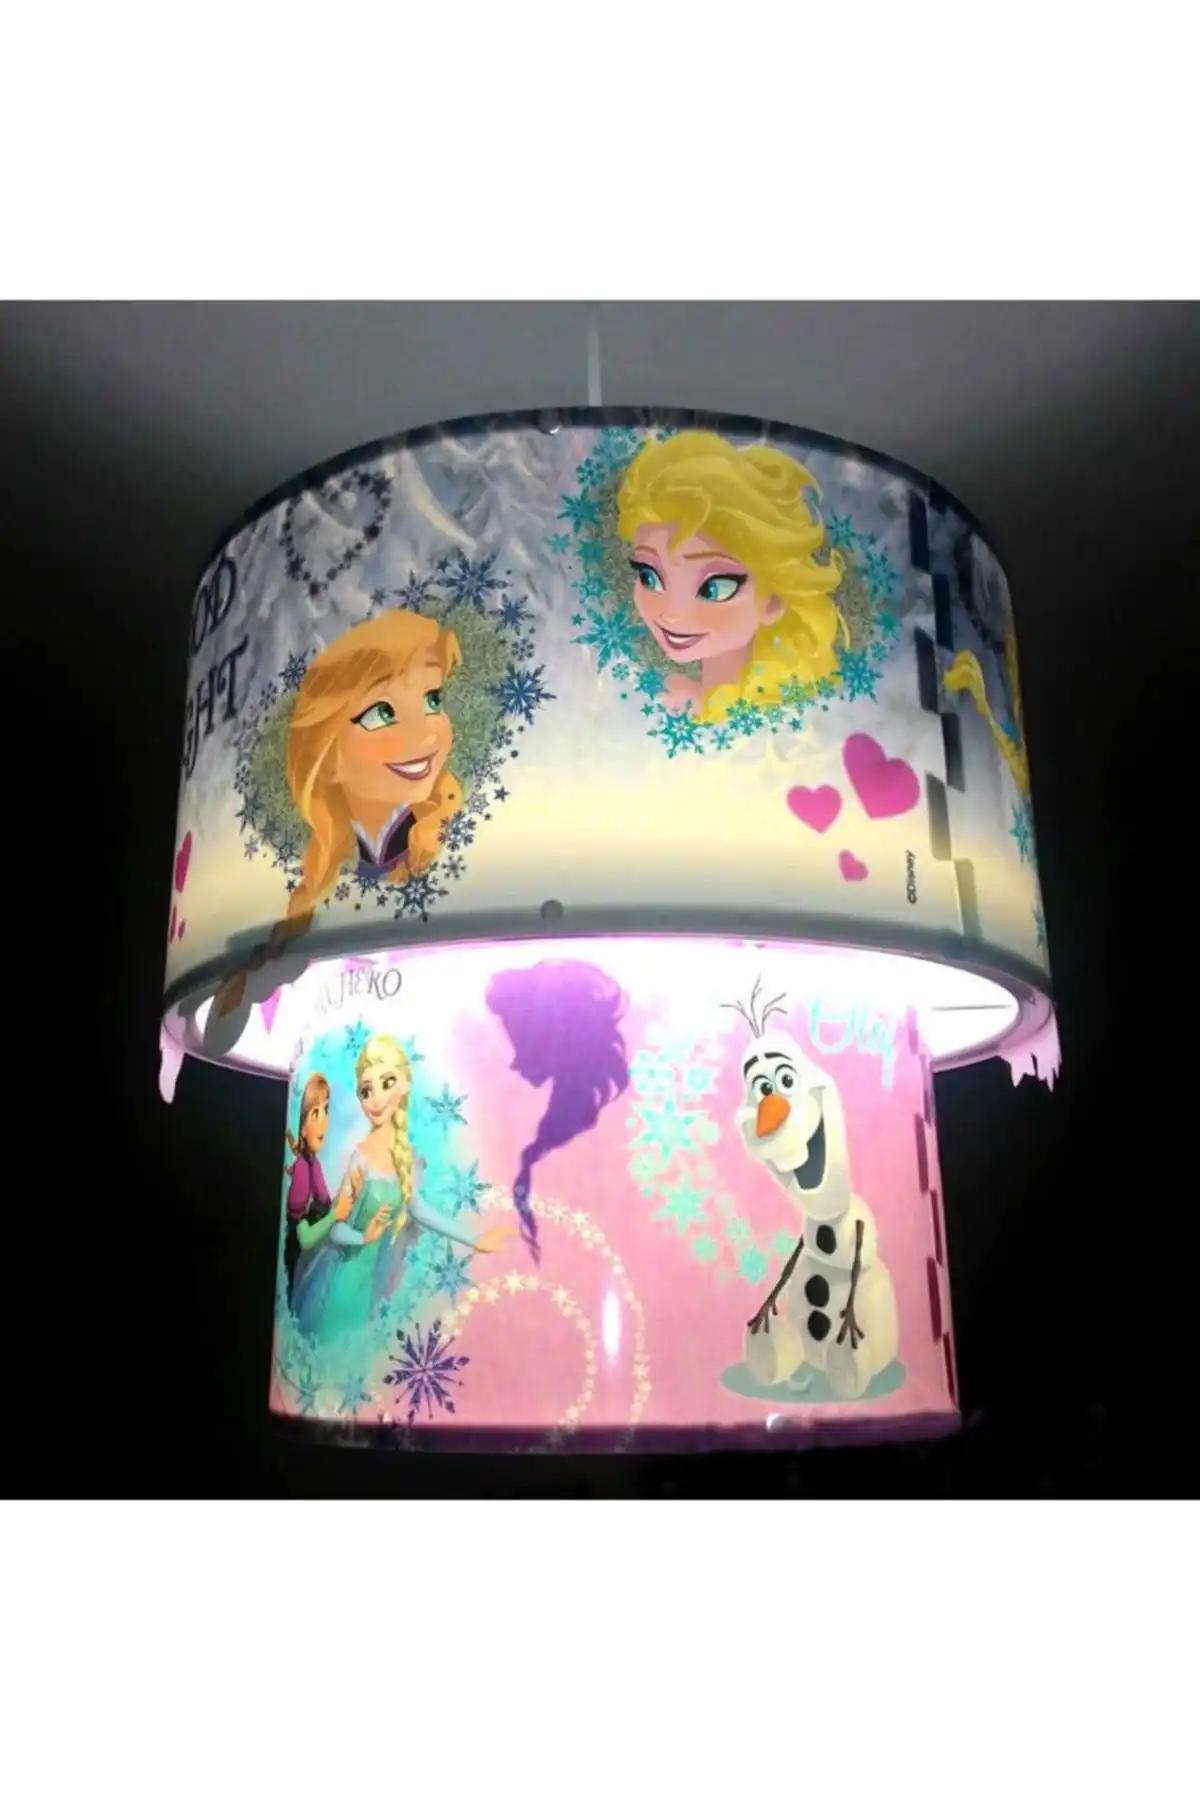 DOLBOVI chandelier 3D-3D Frozen magic ceiling pendant lamp